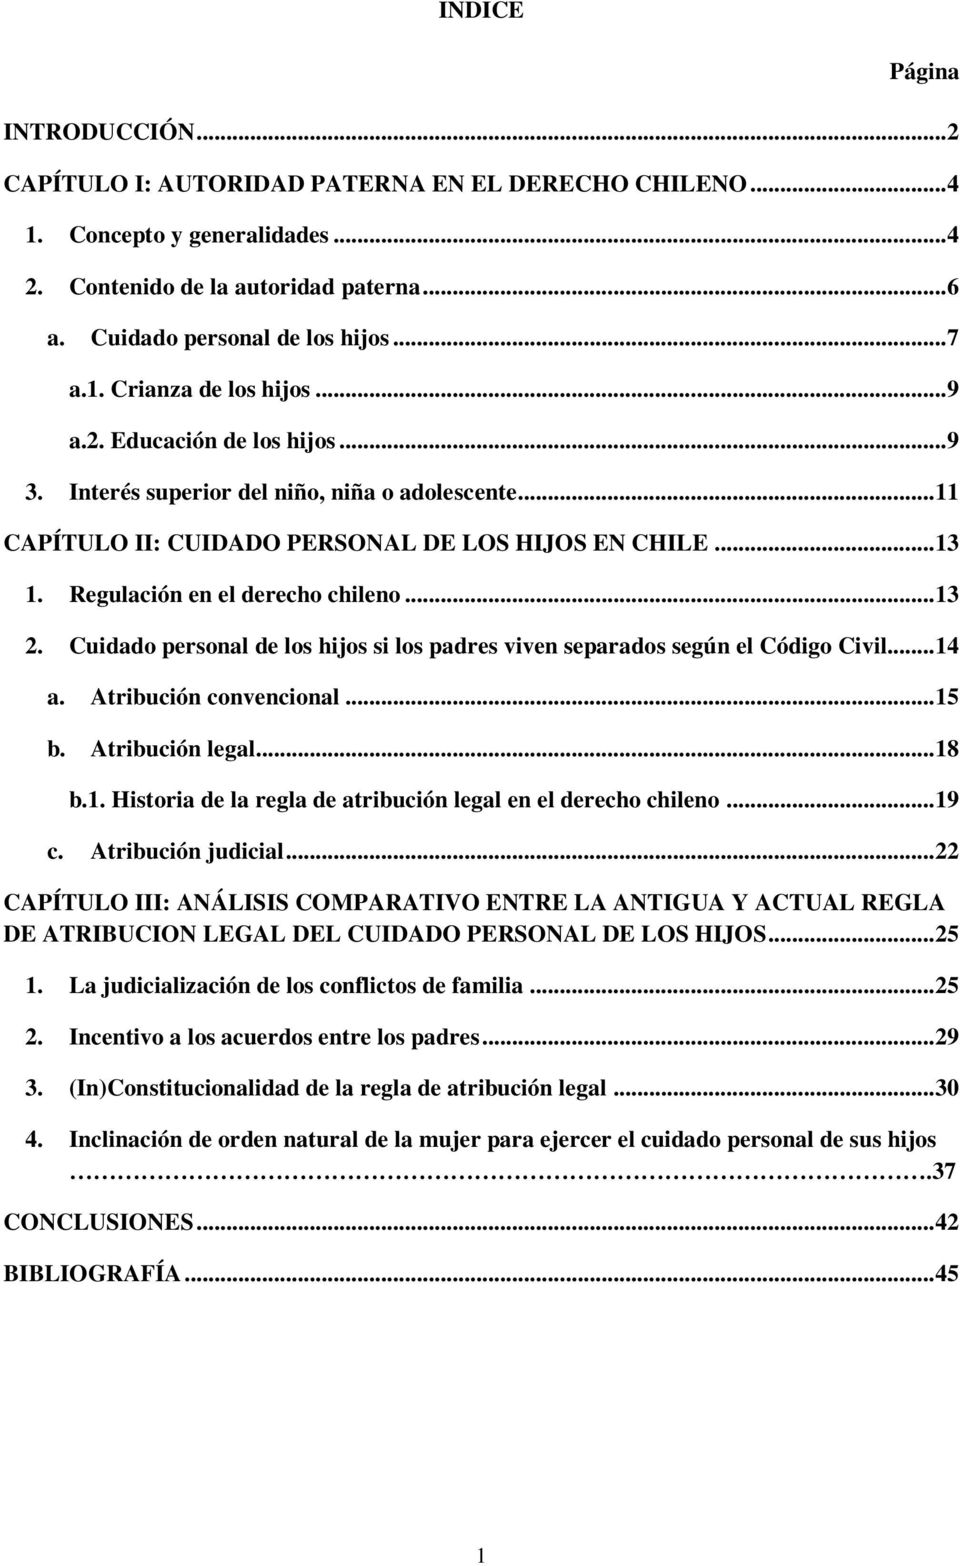 Regulación en el derecho chileno... 13 2. Cuidado personal de los hijos si los padres viven separados según el Código Civil... 14 a. Atribución convencional... 15 b. Atribución legal... 18 b.1. Historia de la regla de atribución legal en el derecho chileno.